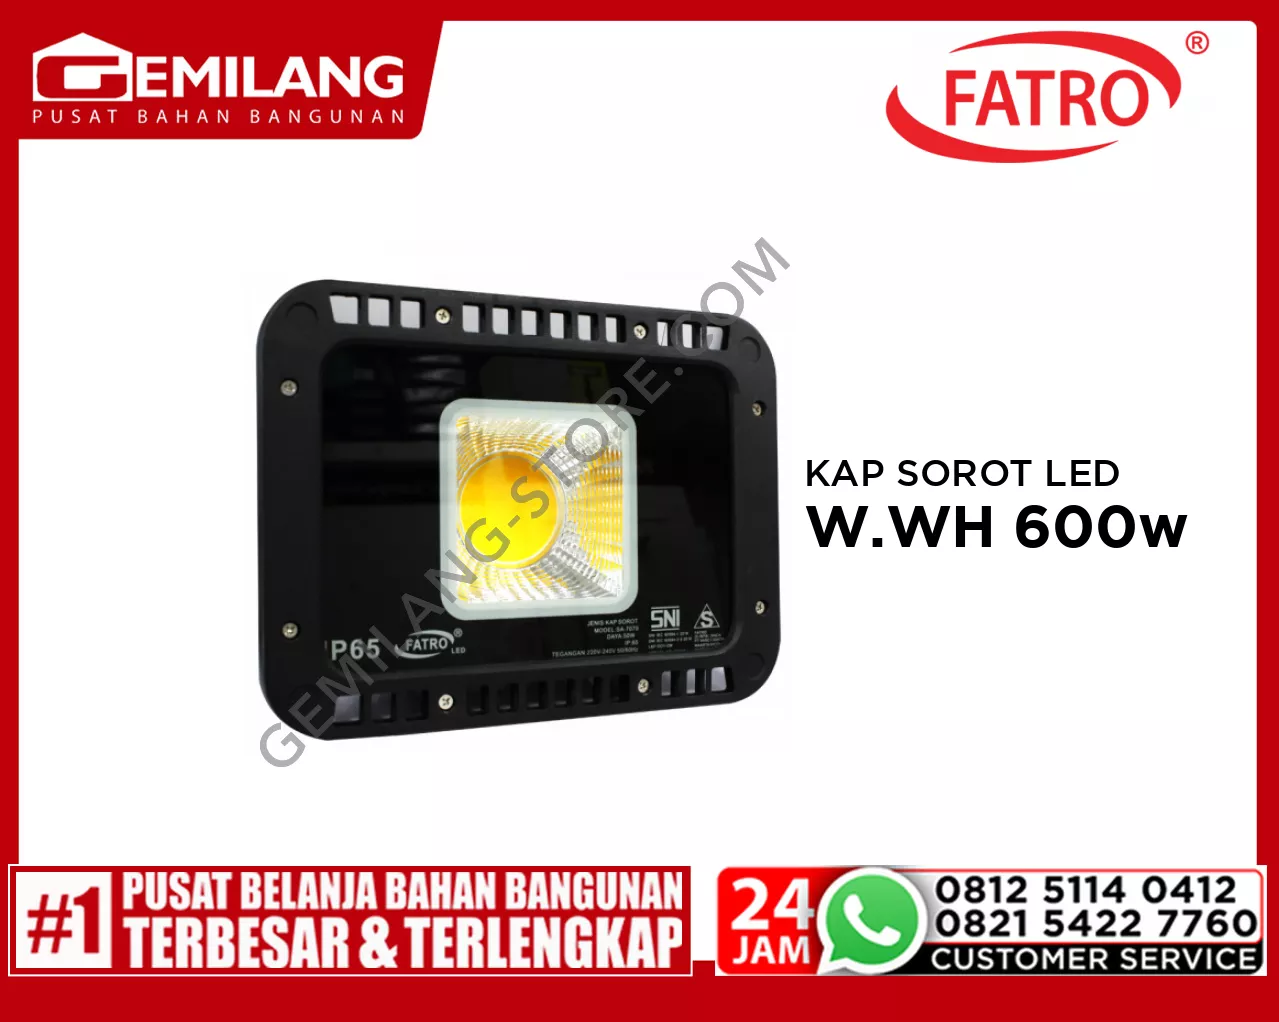 FATRO KAP SOROT LED SA 7070 W.WH 600w